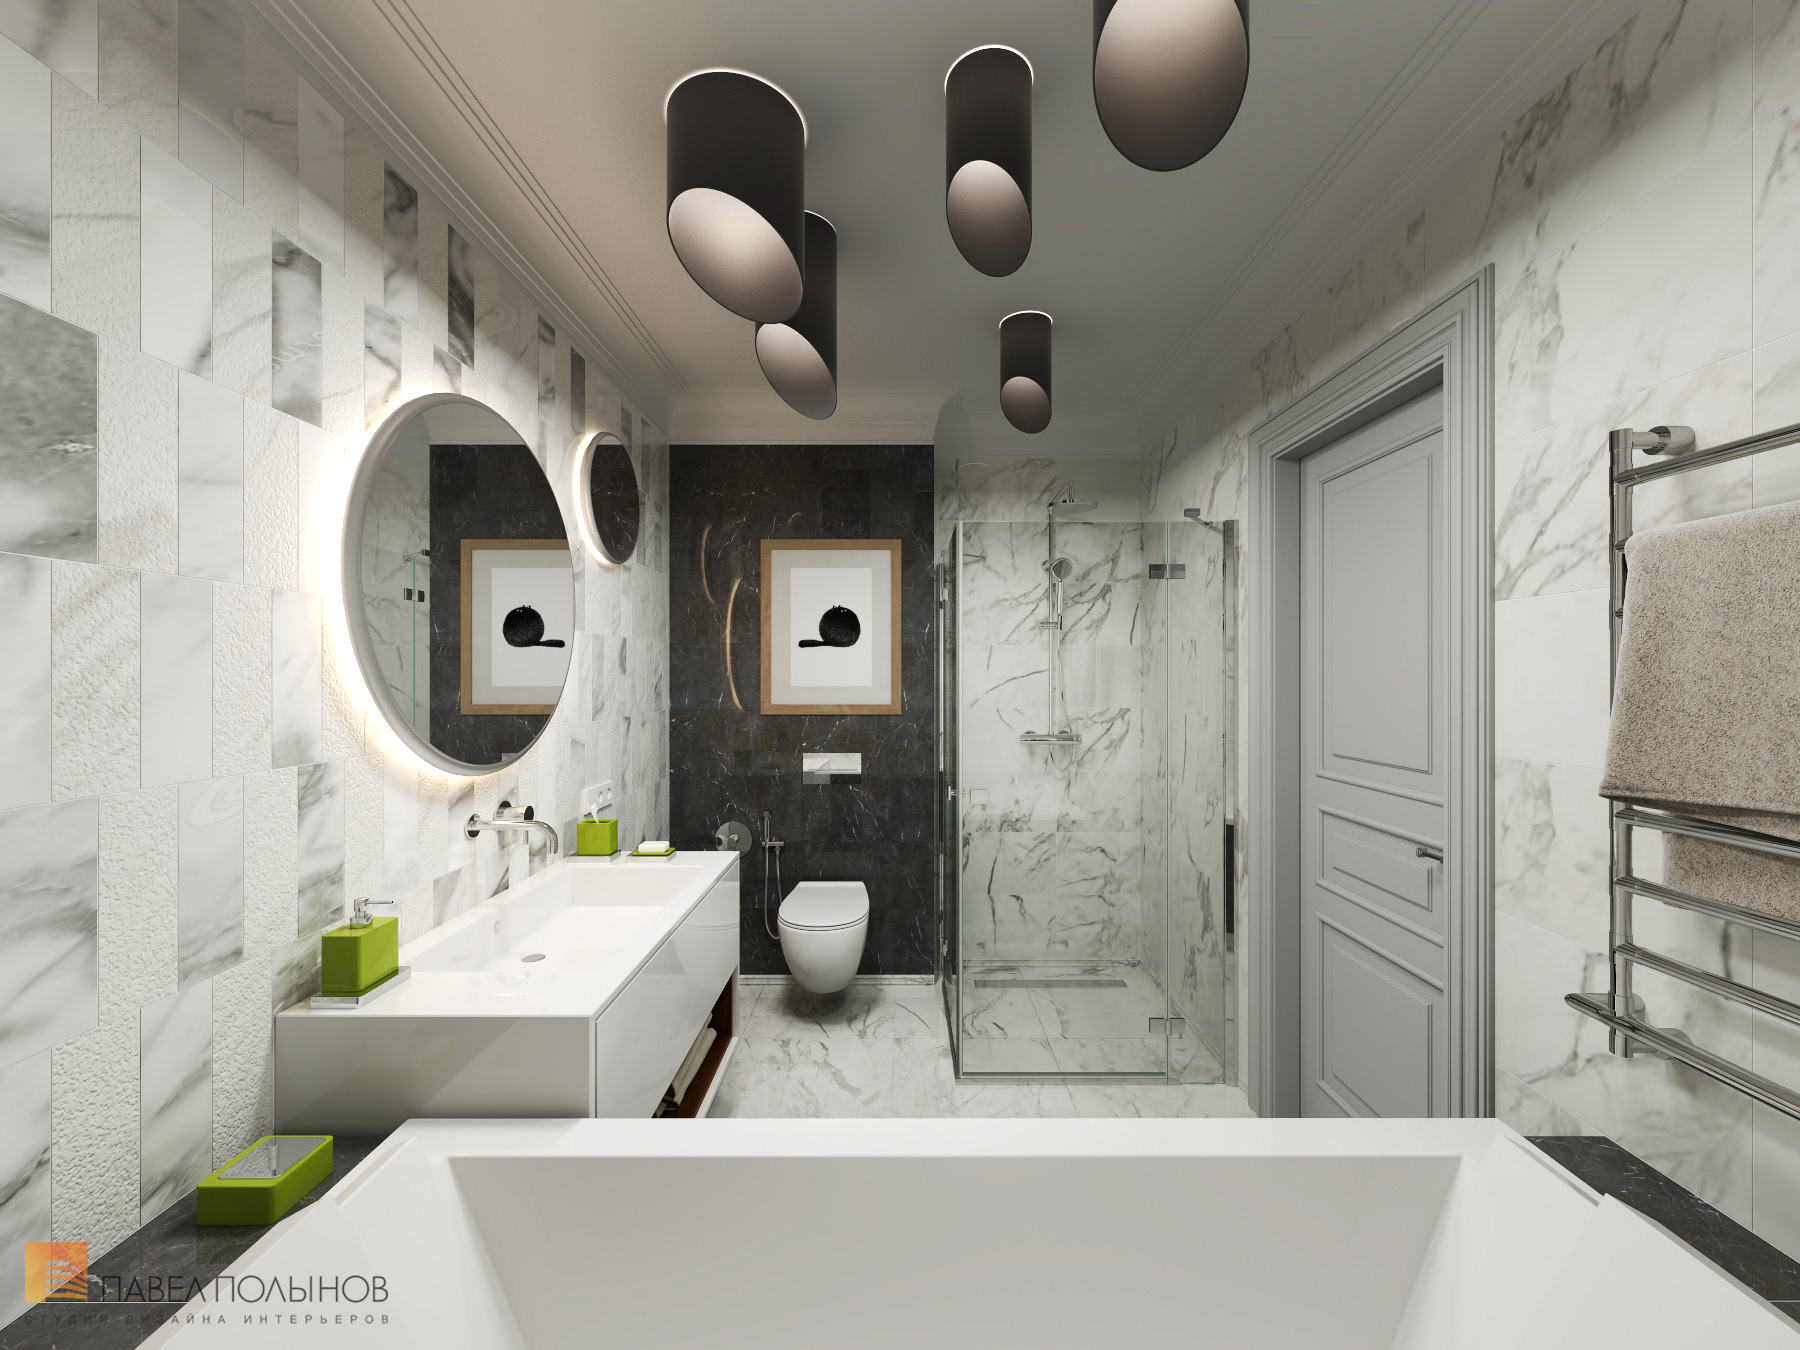 Фото ванная комната из проекта «Интерьер квартиры в стиле неоклассики, ЖК «Парадный квартал», 190 кв.м.»